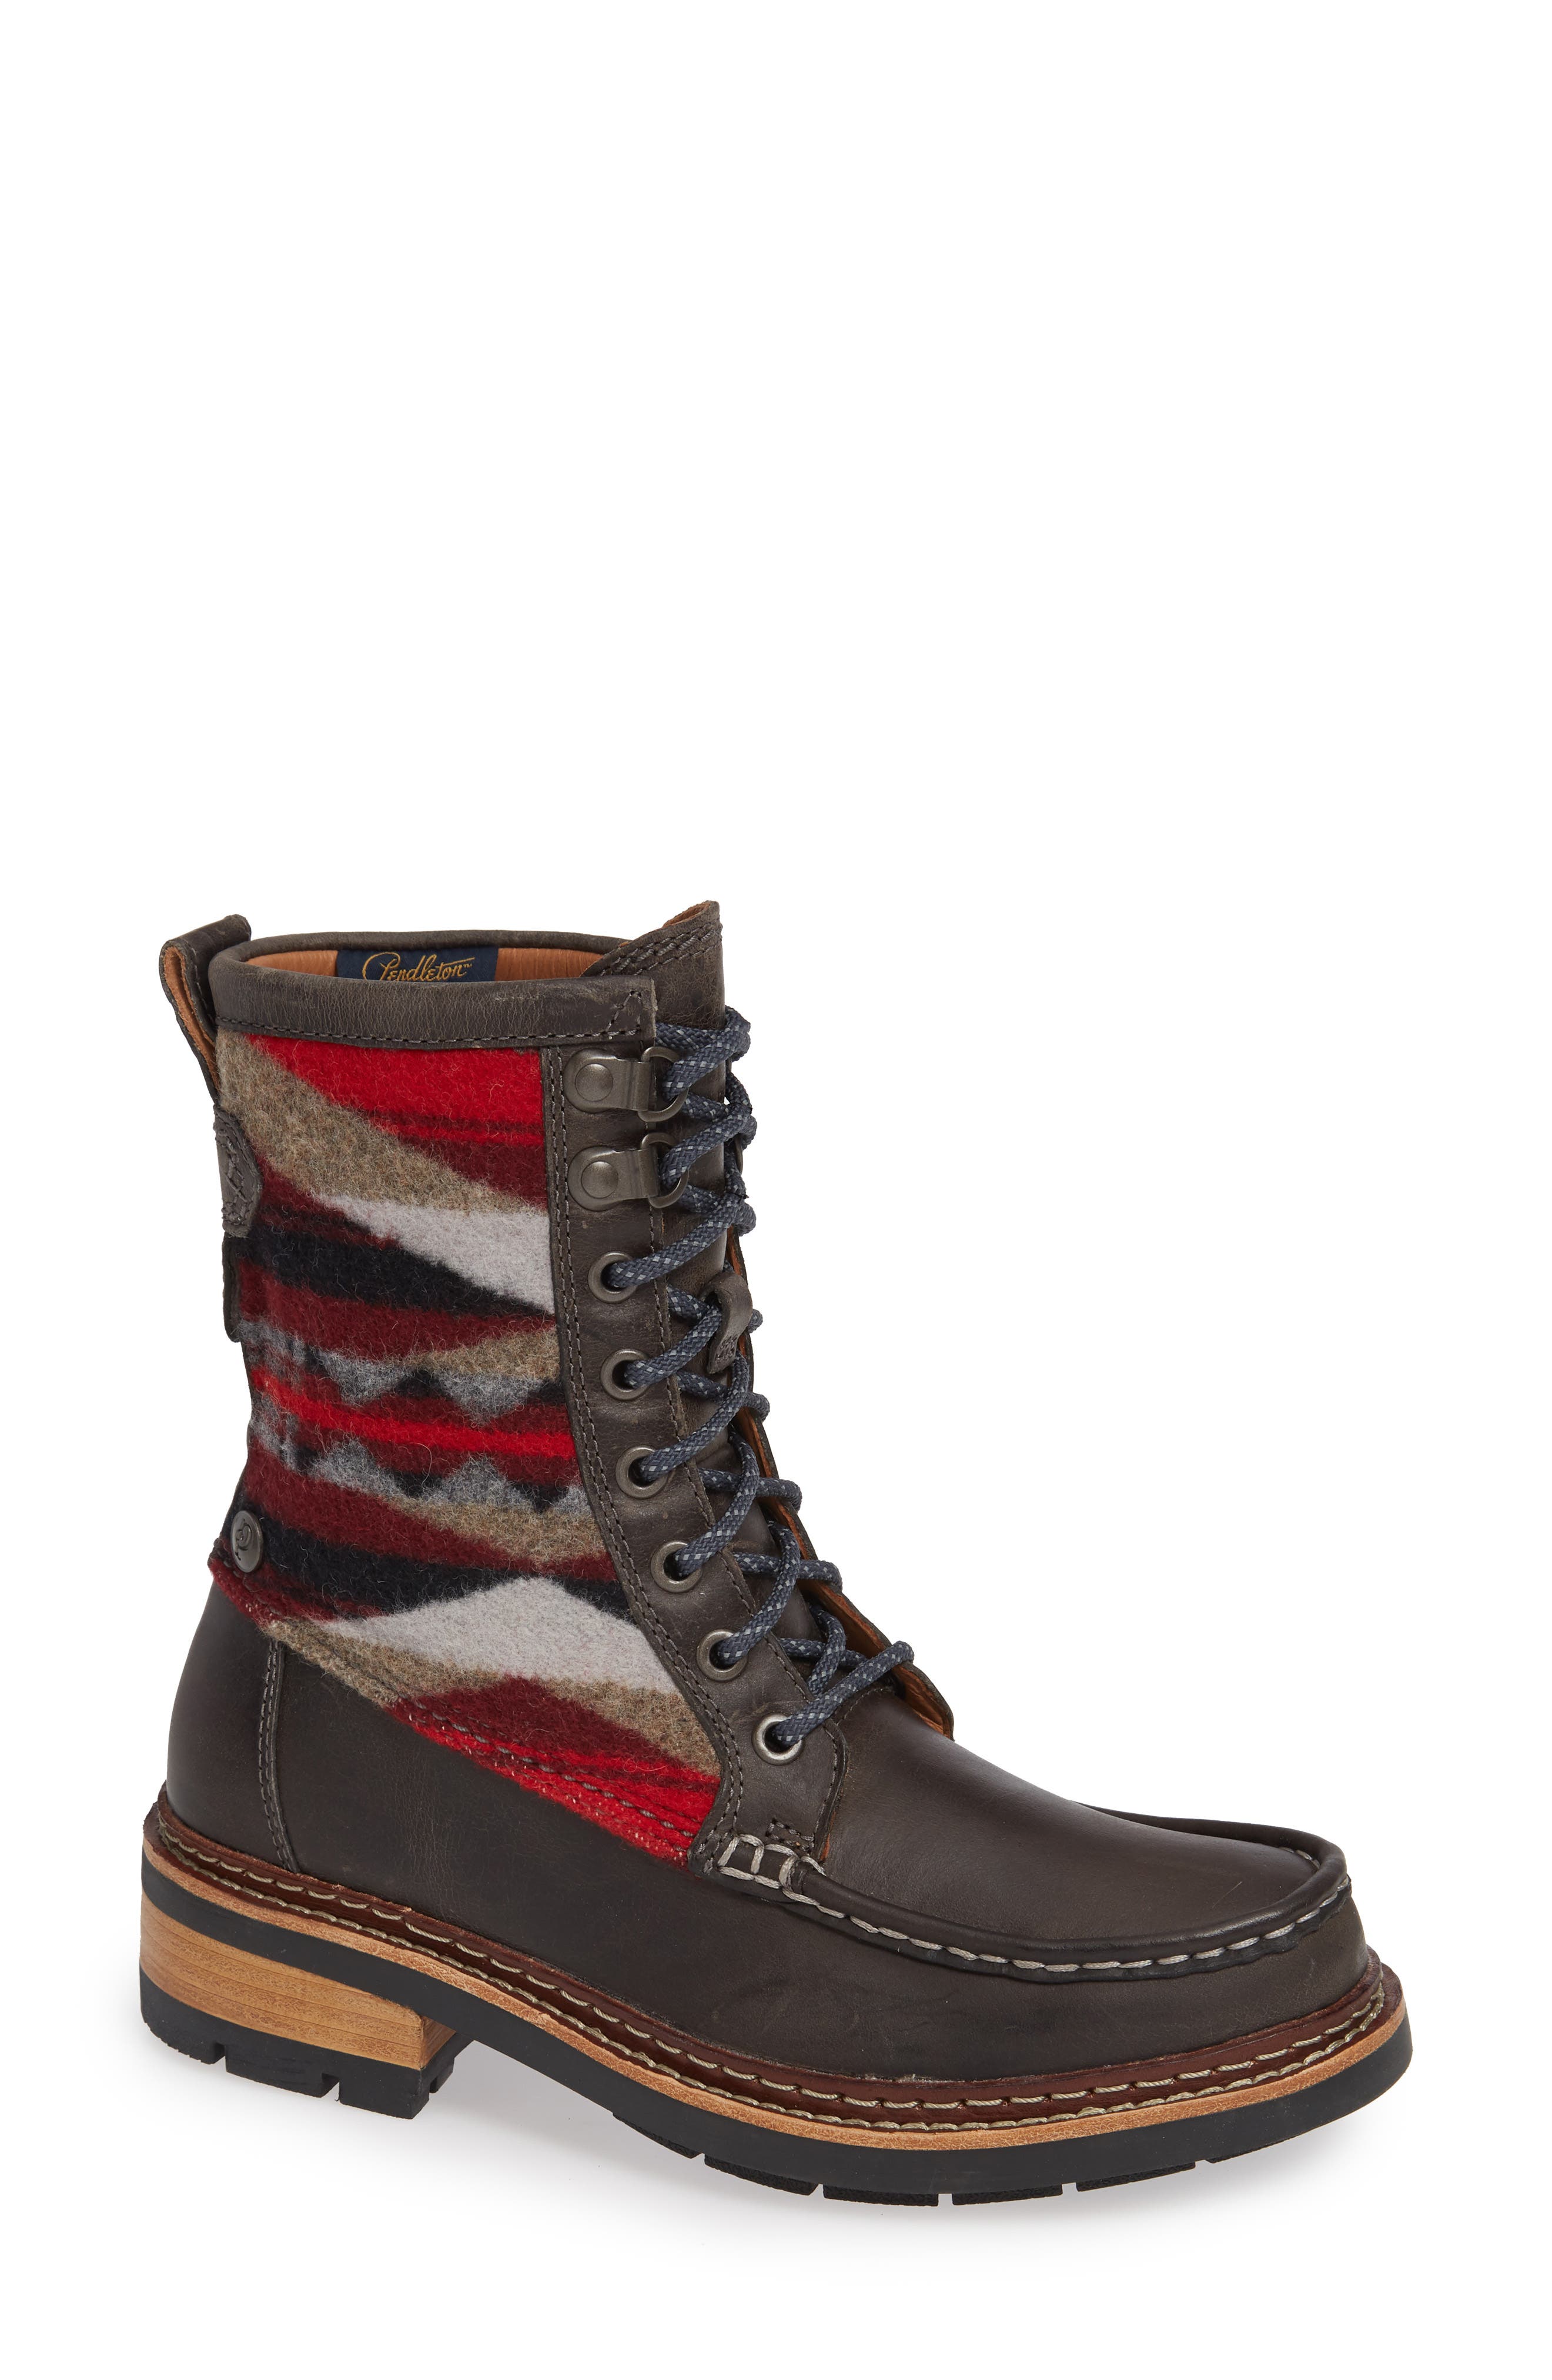 clarks pendleton ottawa boots